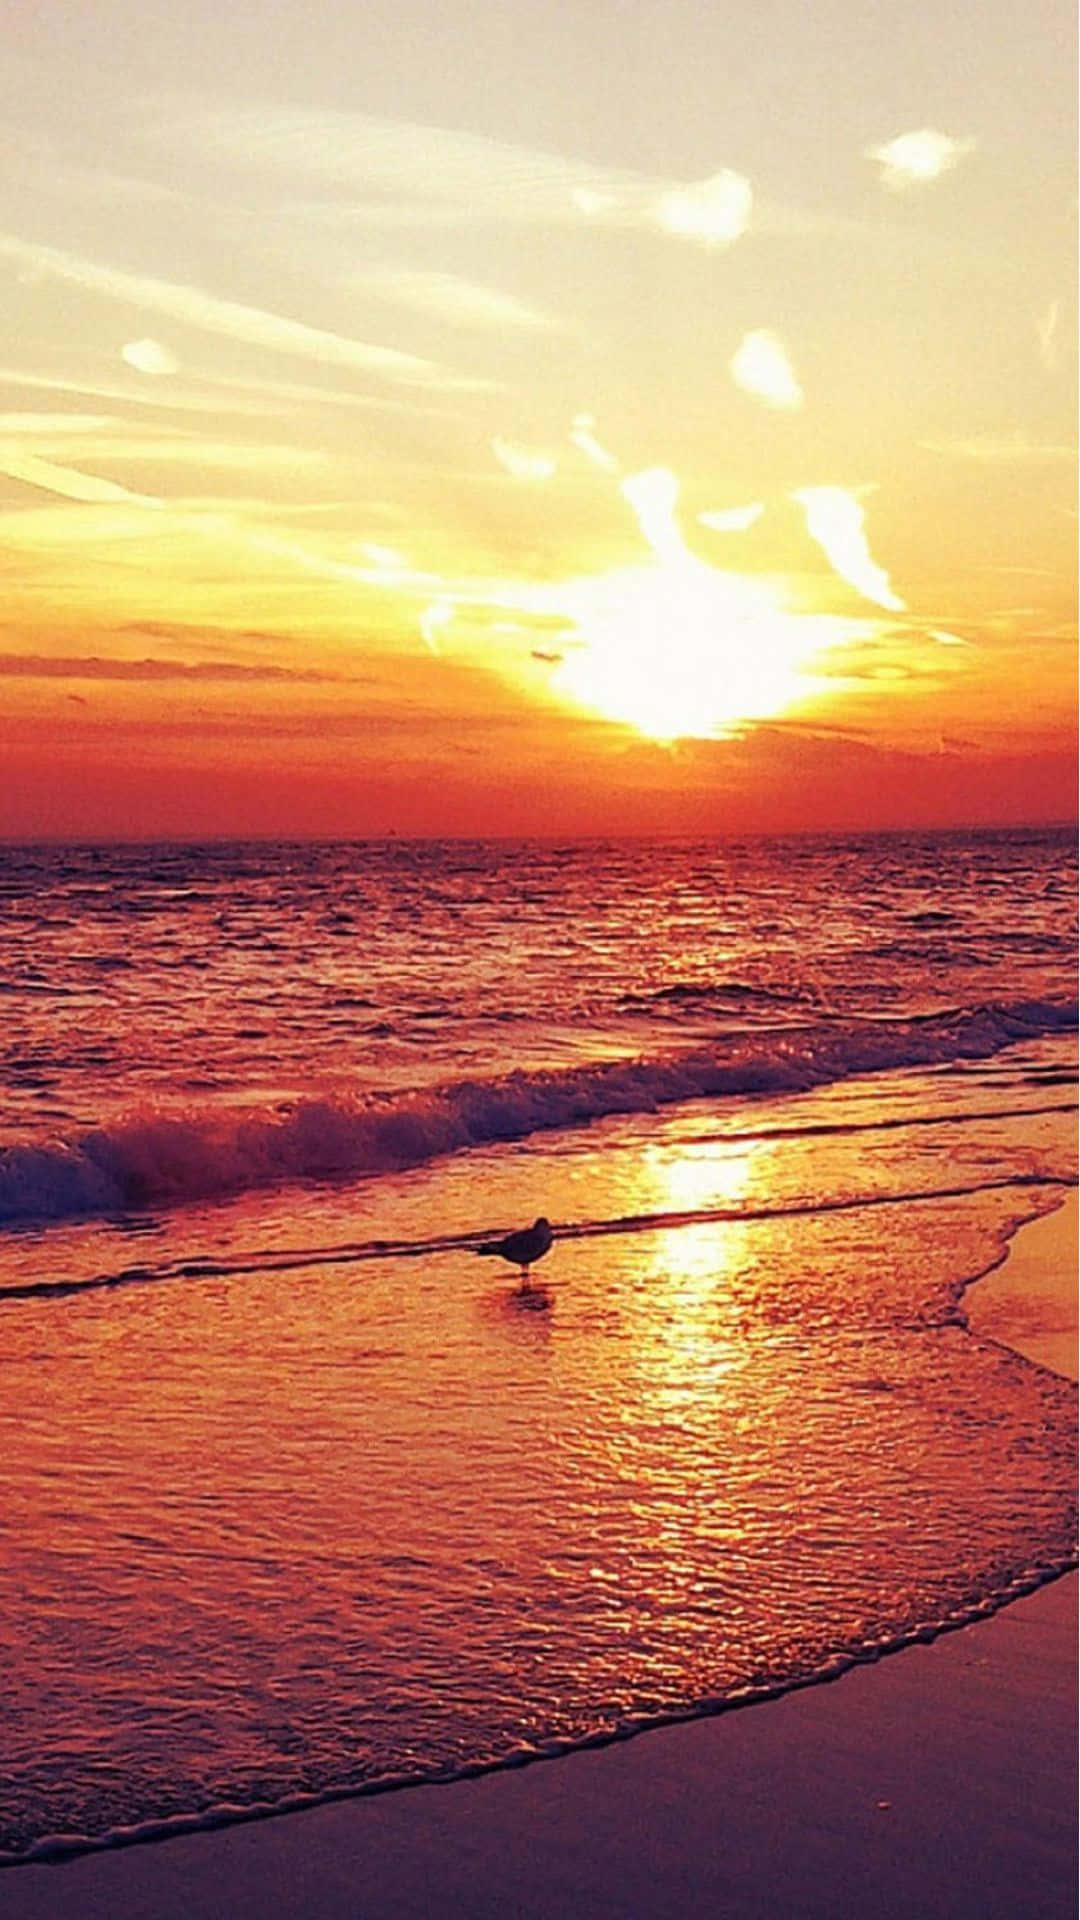 Njutav En Fantastisk Solnedgång På Stranden Med Din Iphone Som Bakgrundsbild. Wallpaper